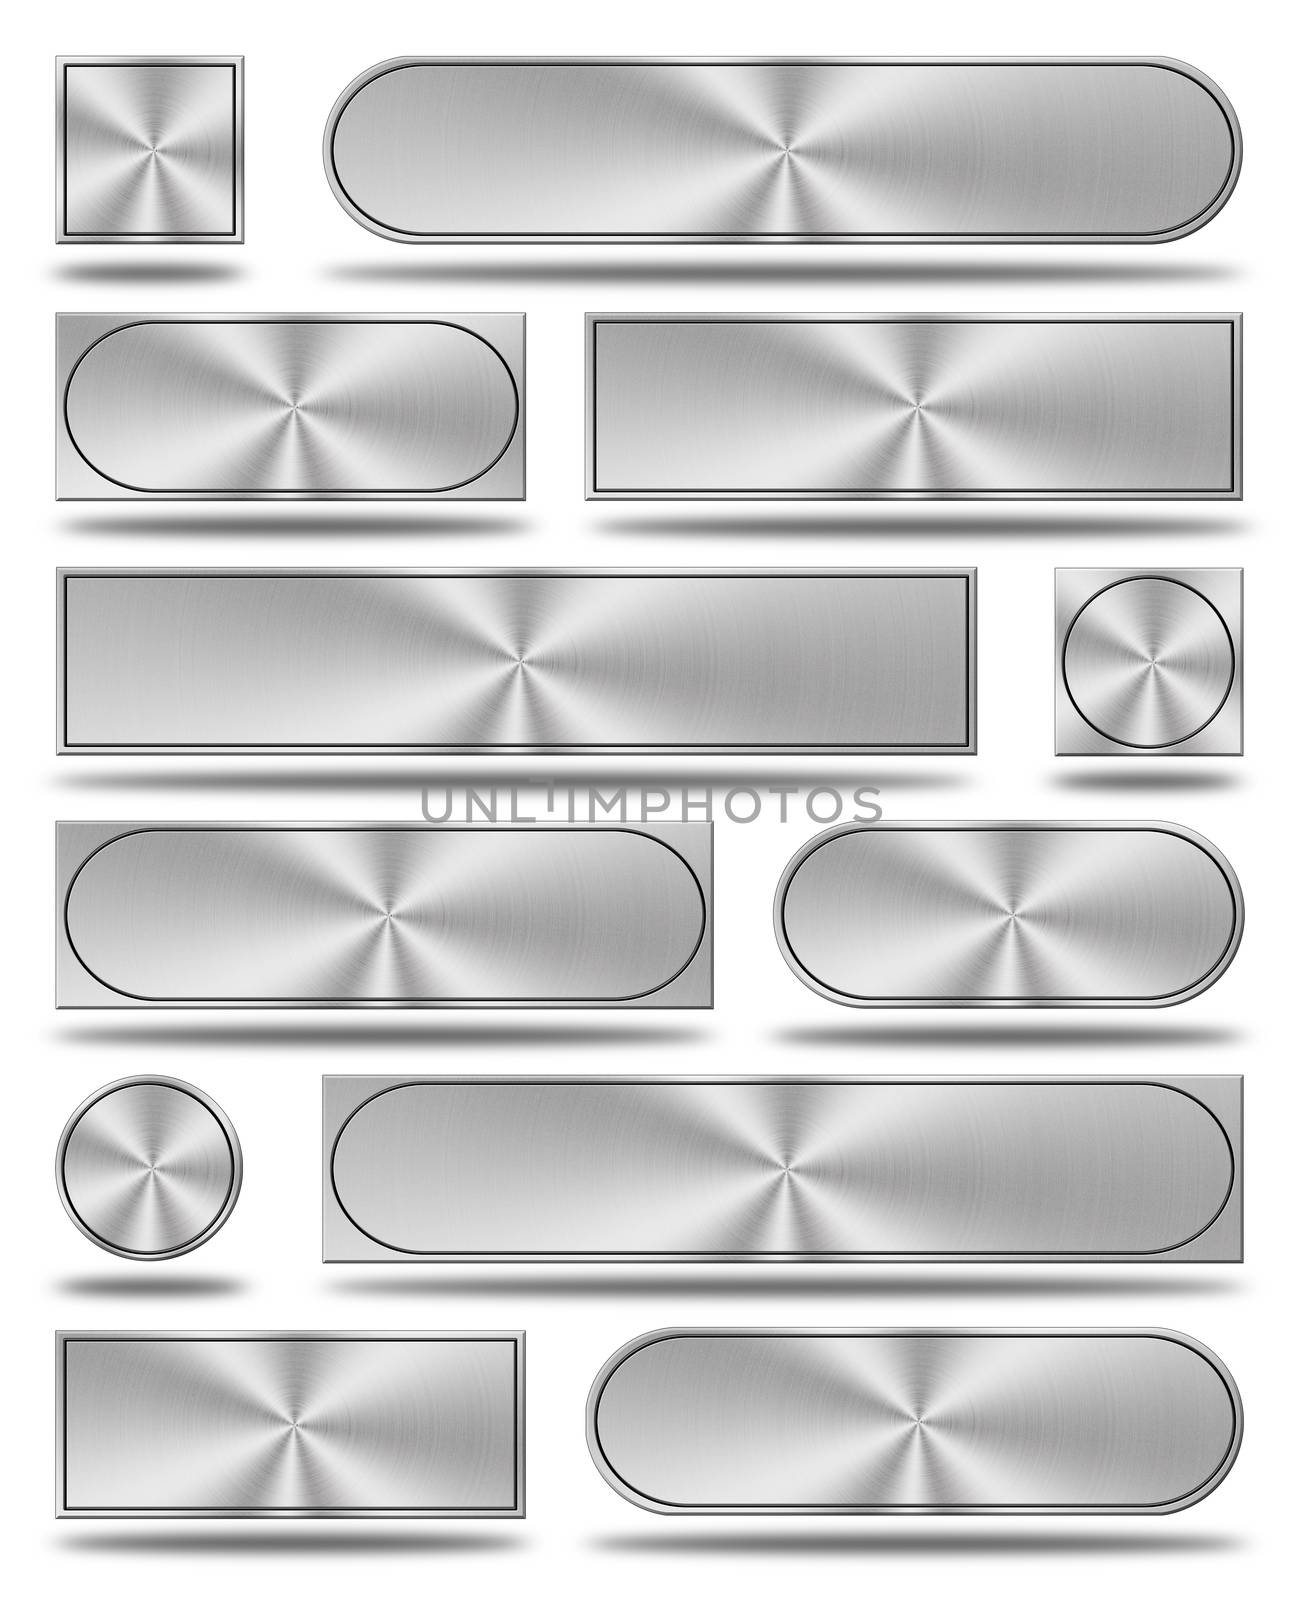 The aluminum buttons by konradkerker